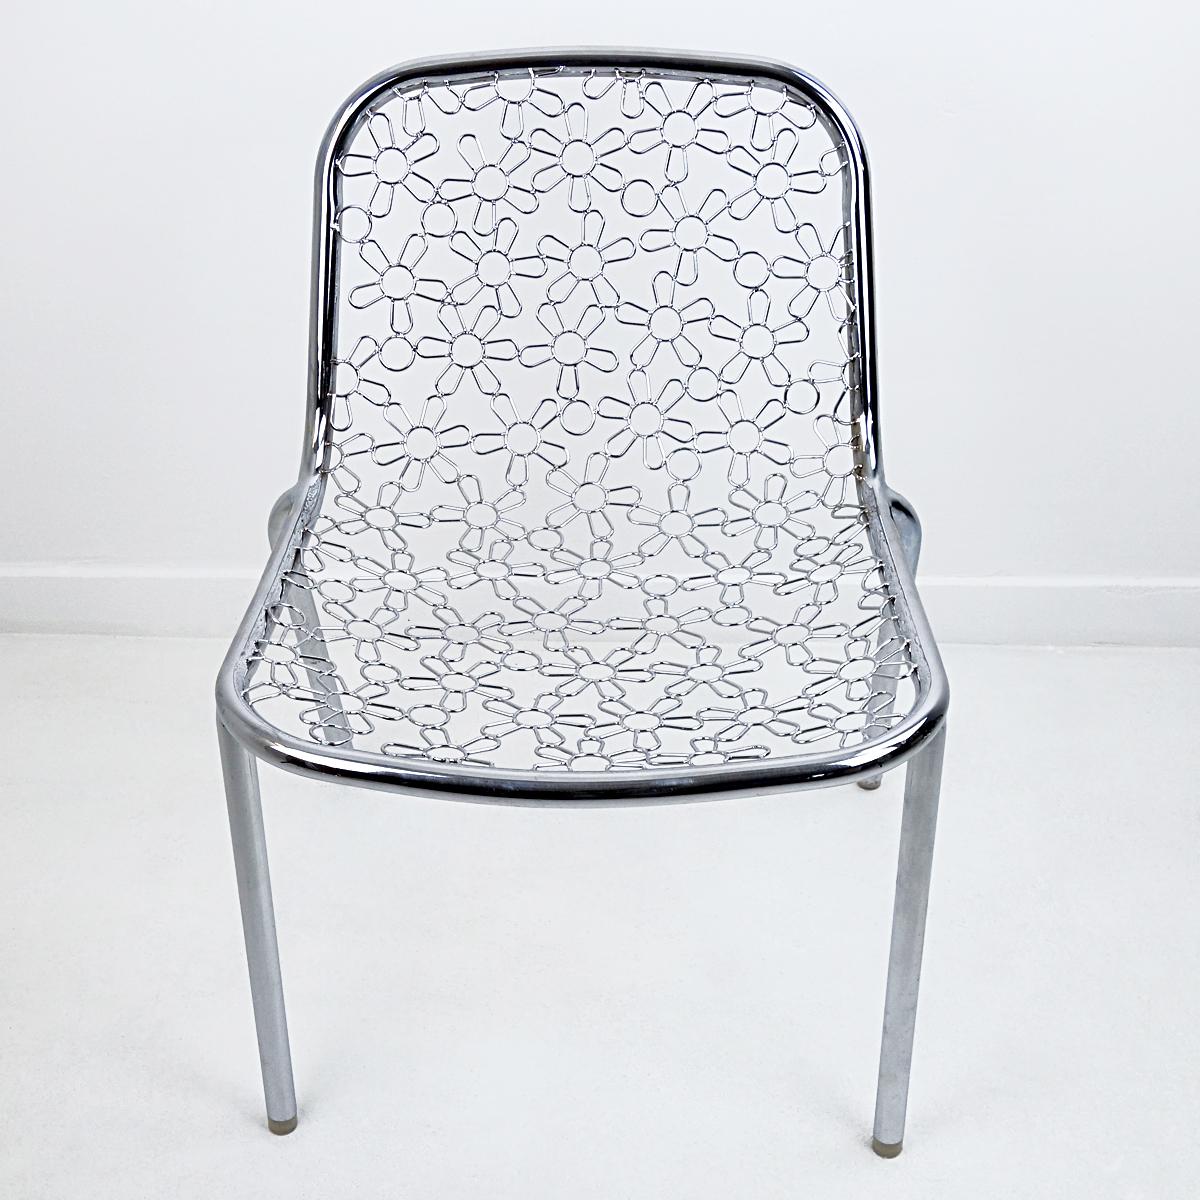 Pièce unique du célèbre designer néerlandais Marcel Wanders. Il a été vendu lors d'une vente d'échantillons au MOOOI à Amsterdam en 2005. Le chrome présente un motif de fleurs.
Cette chaise n'a jamais été produite. Wanders a finalement opté pour